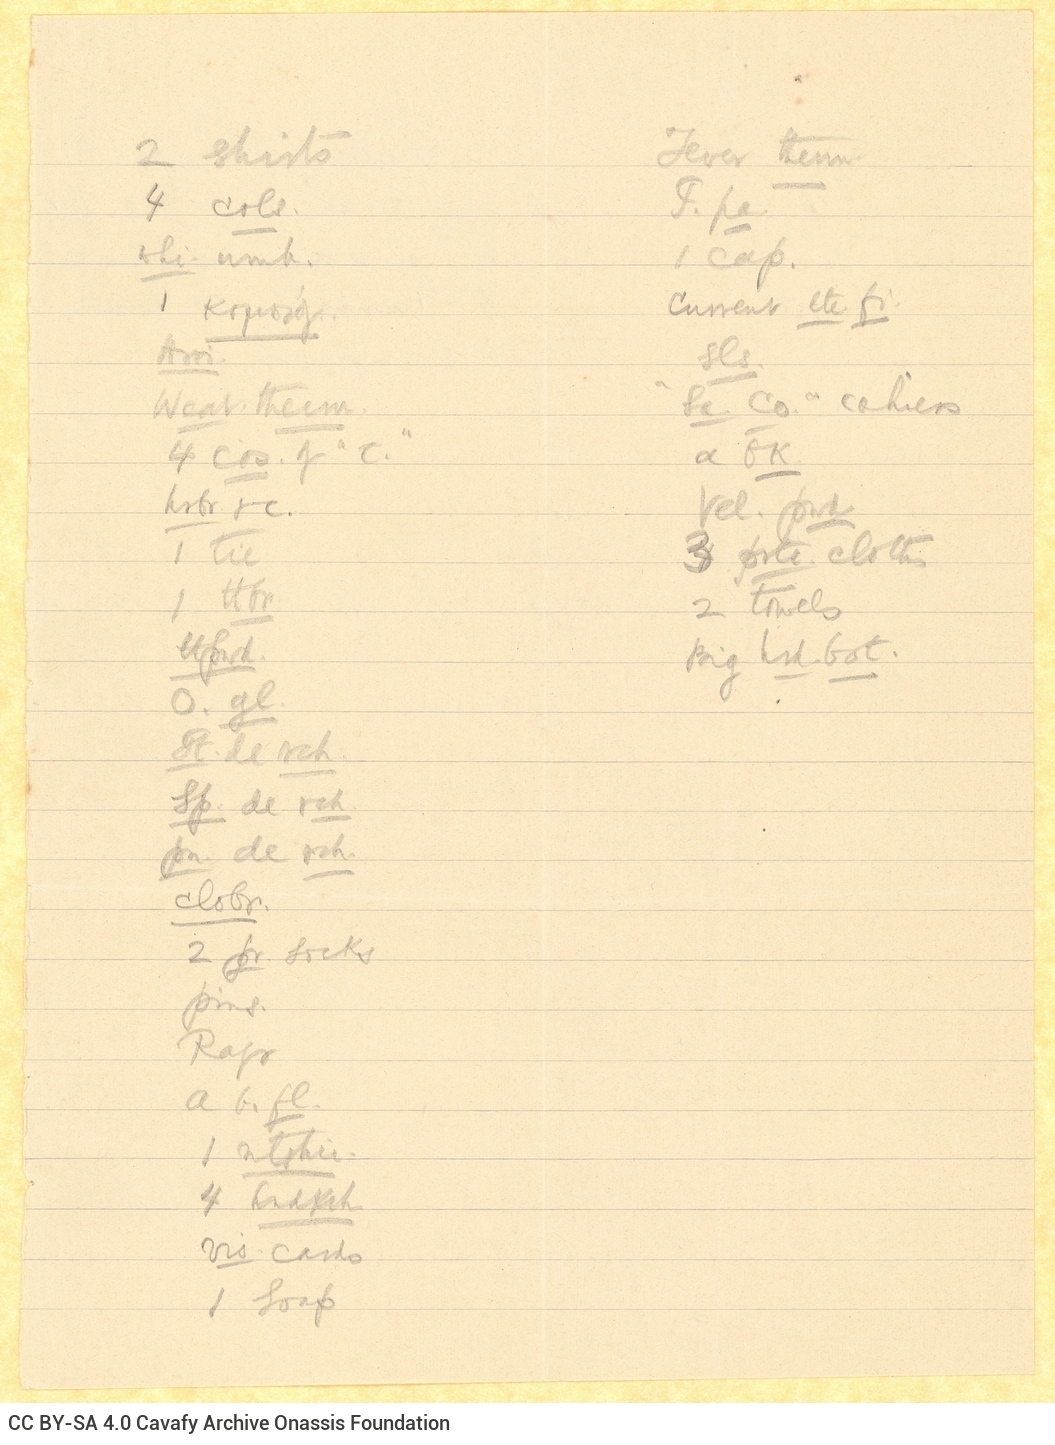 Χειρόγραφος κατάλογος ενδυμάτων (πουκάμισα, γραβάτα κλπ.) και προσ�